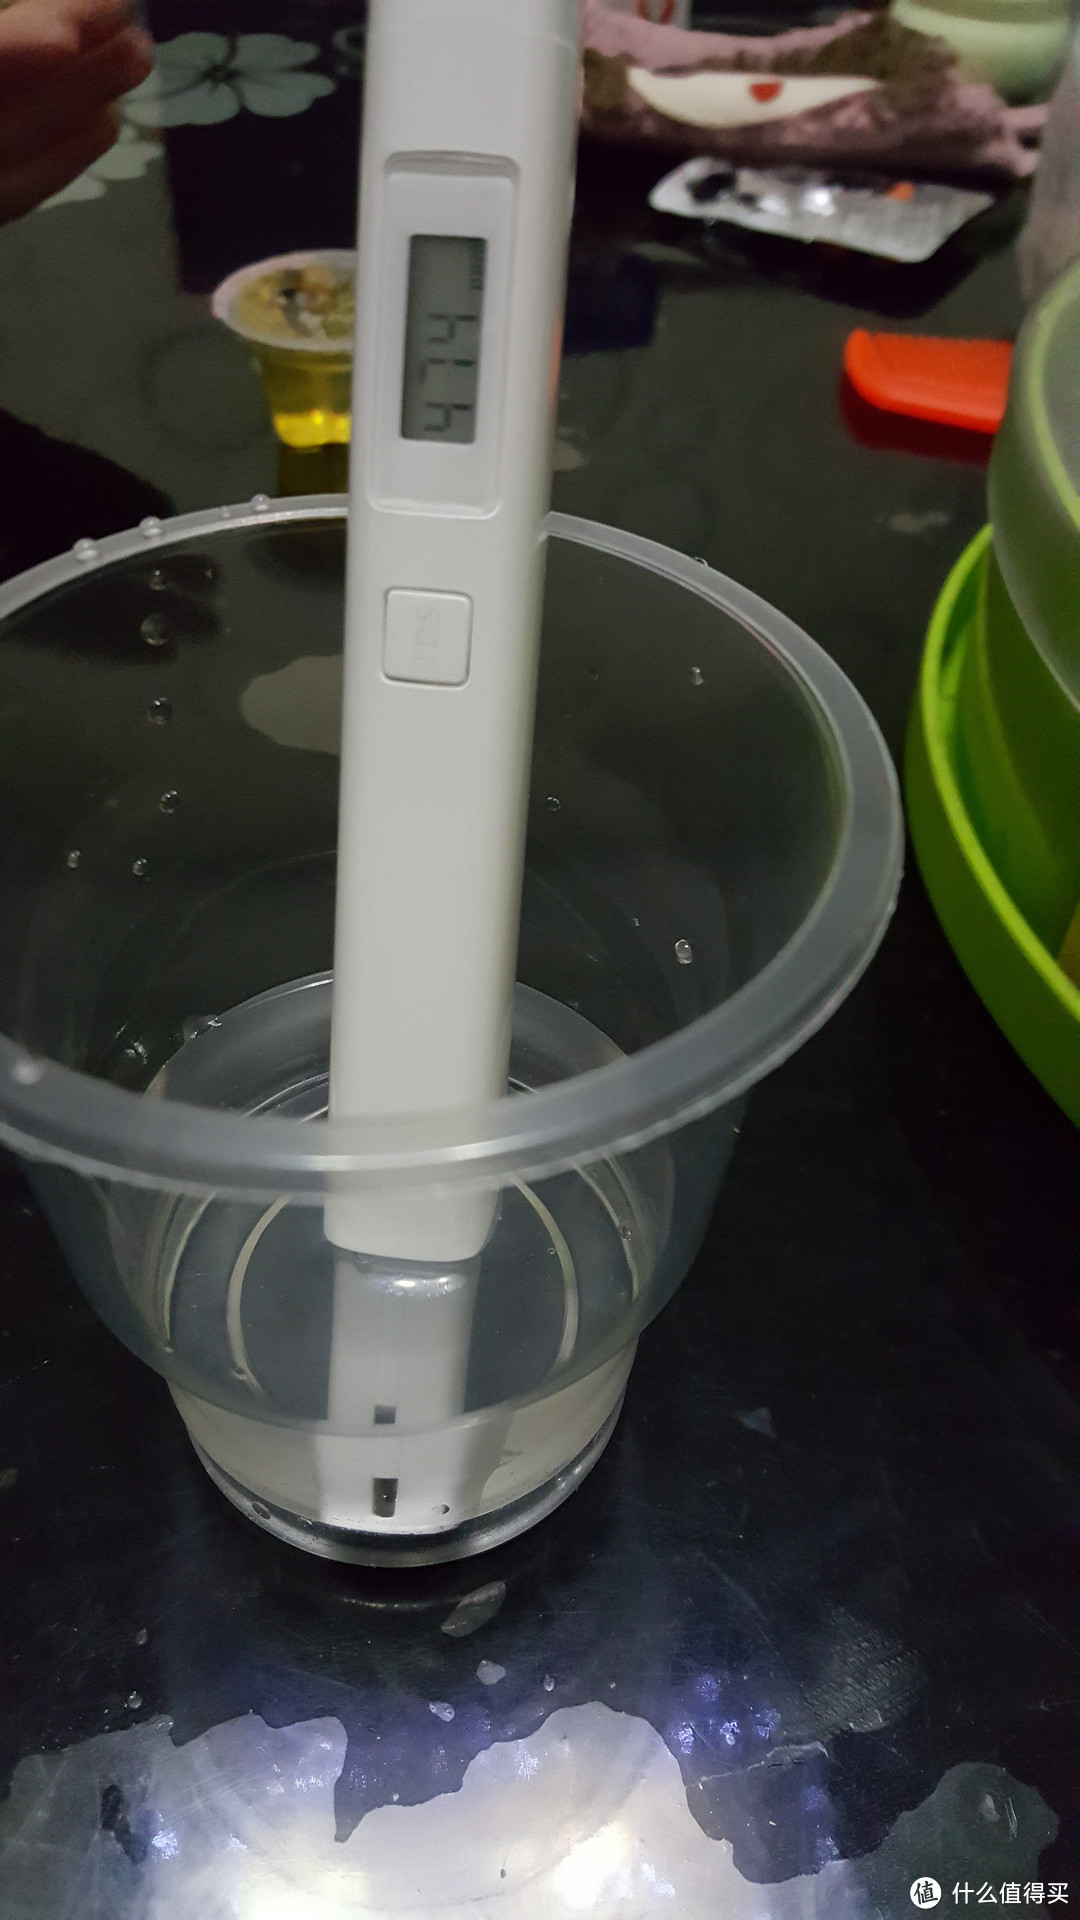 沁园家庭净水器 初使用 简单评测